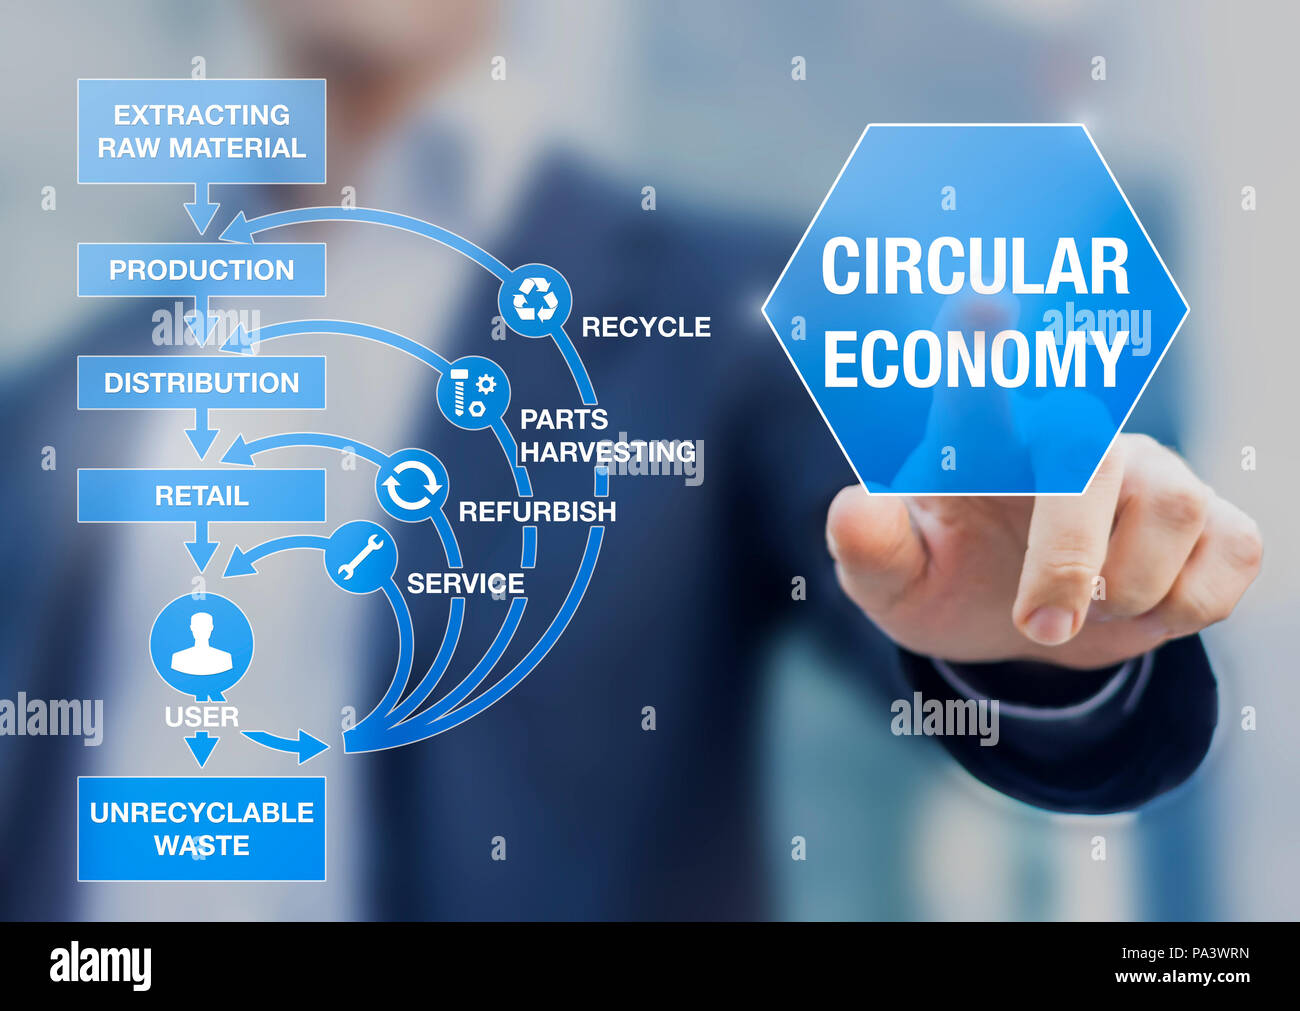 Circular Economy Business Modell für nachhaltige Entwicklung System, abnehmende natürliche Ressourcen und Abfall, Recycling, Wiederverwendung, Renovieren, p verbessern Stockfoto